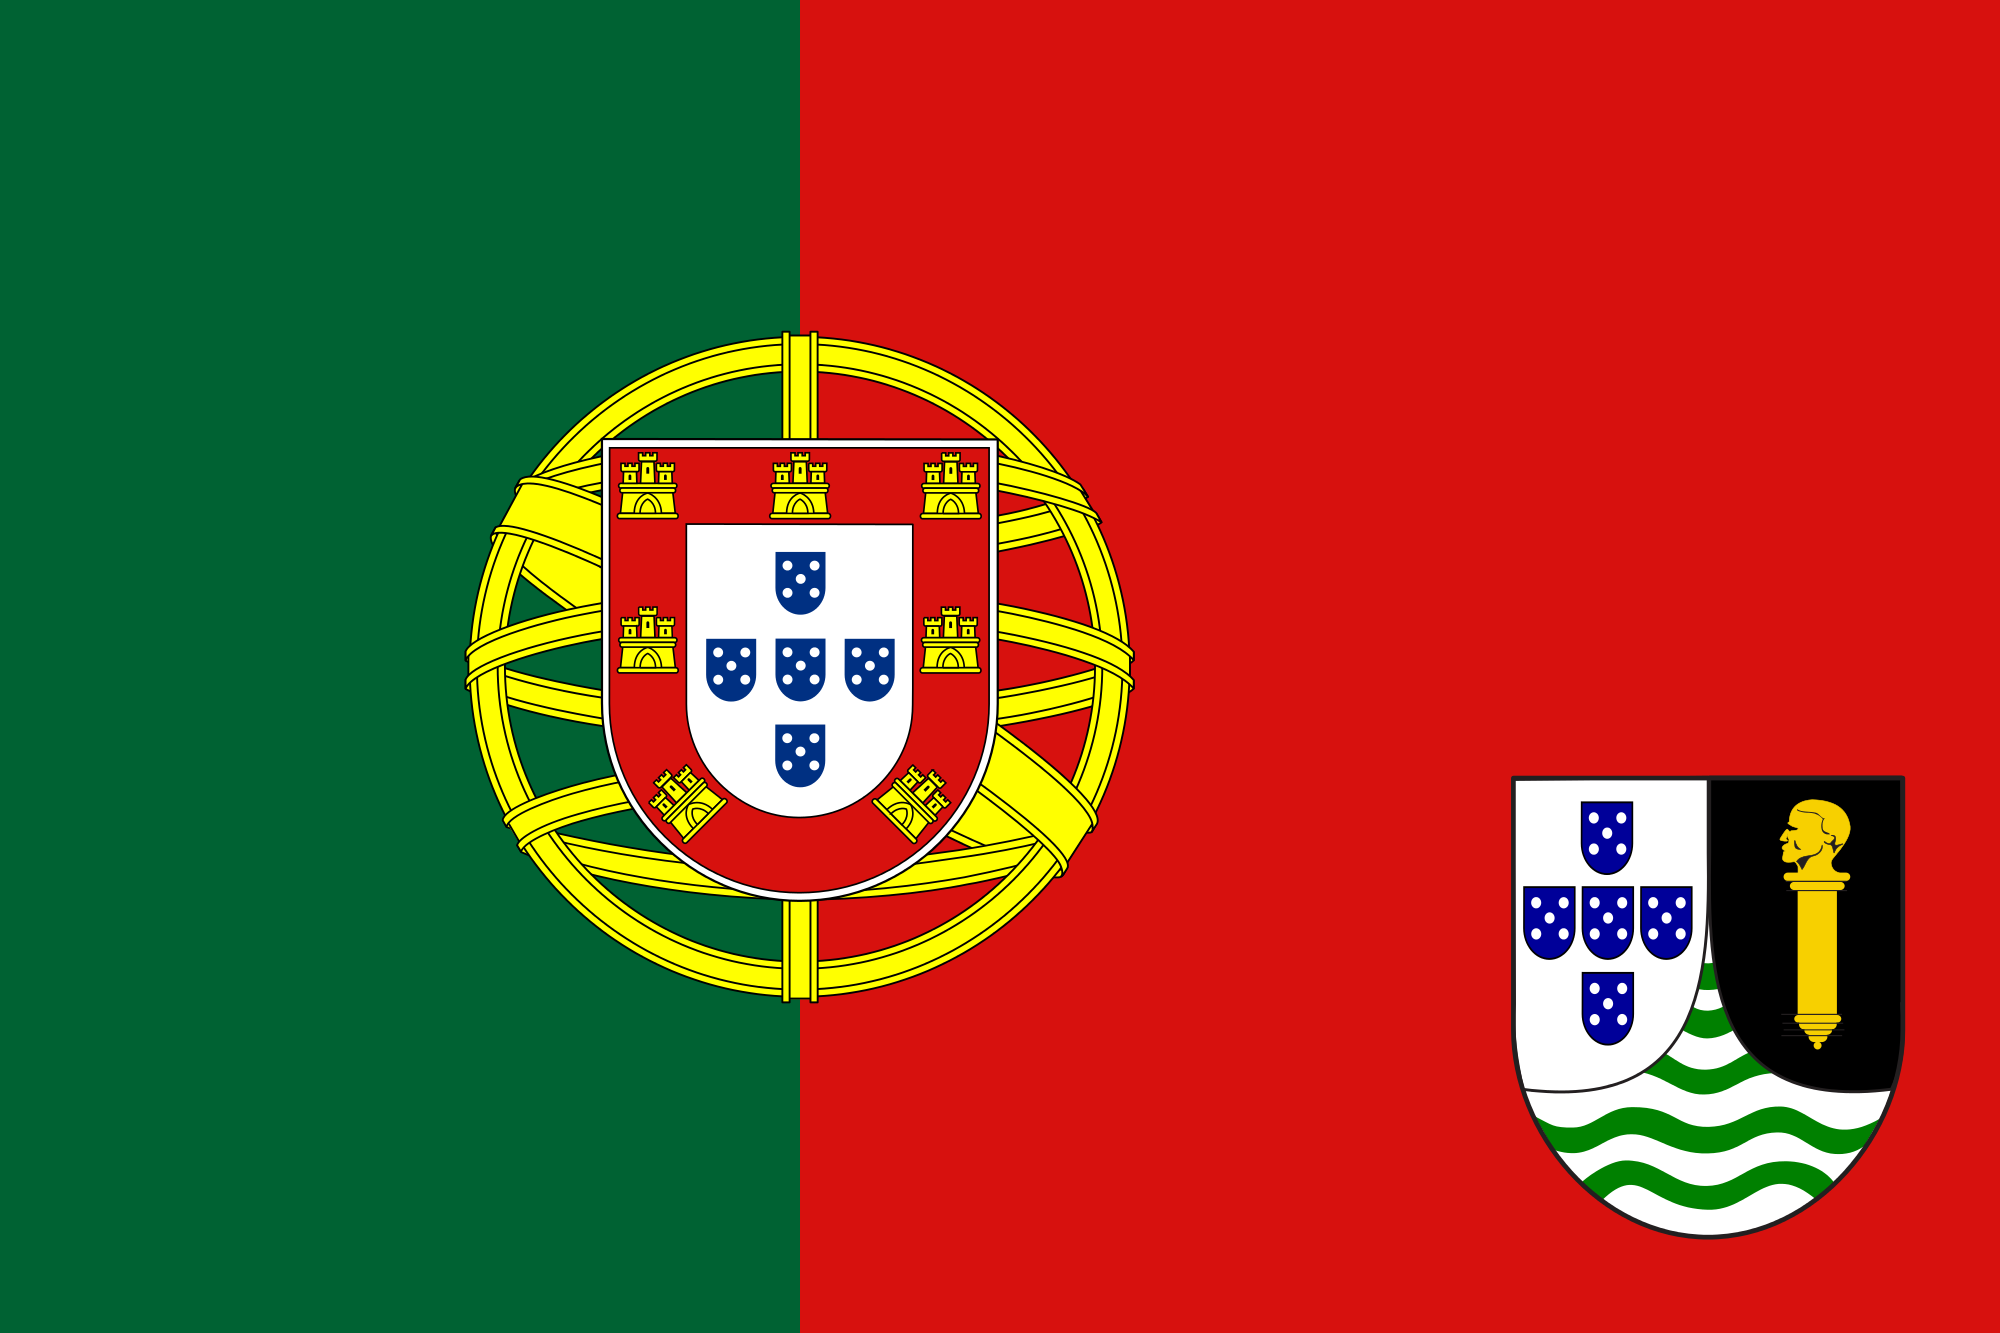 Portoguese_Guinea_flag